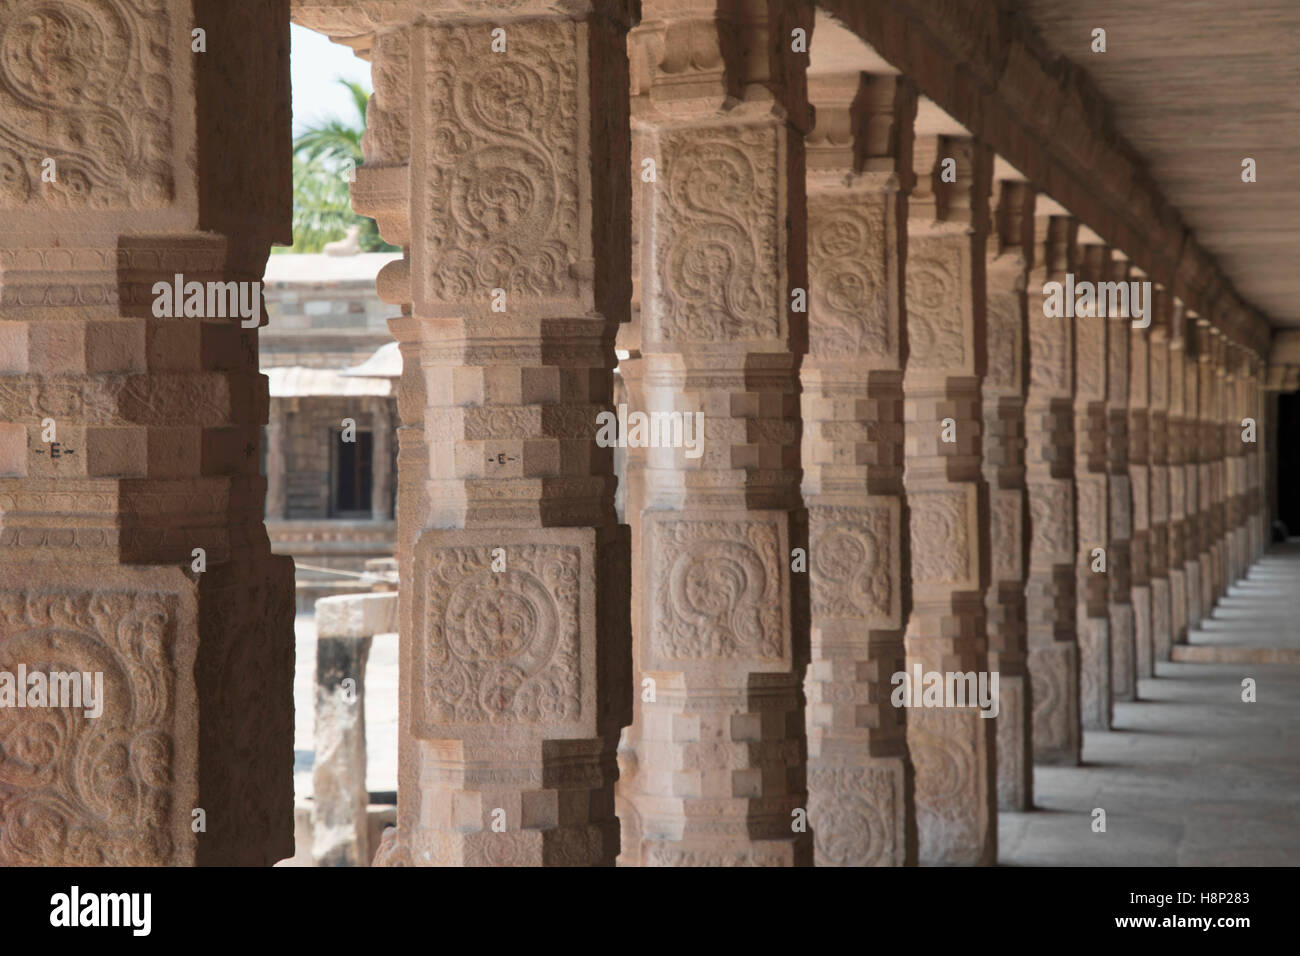 Le nord des piliers sculptés du cloître, Temple d'Airavatesvara, Darasuram, Tamil Nadu, Inde. Banque D'Images